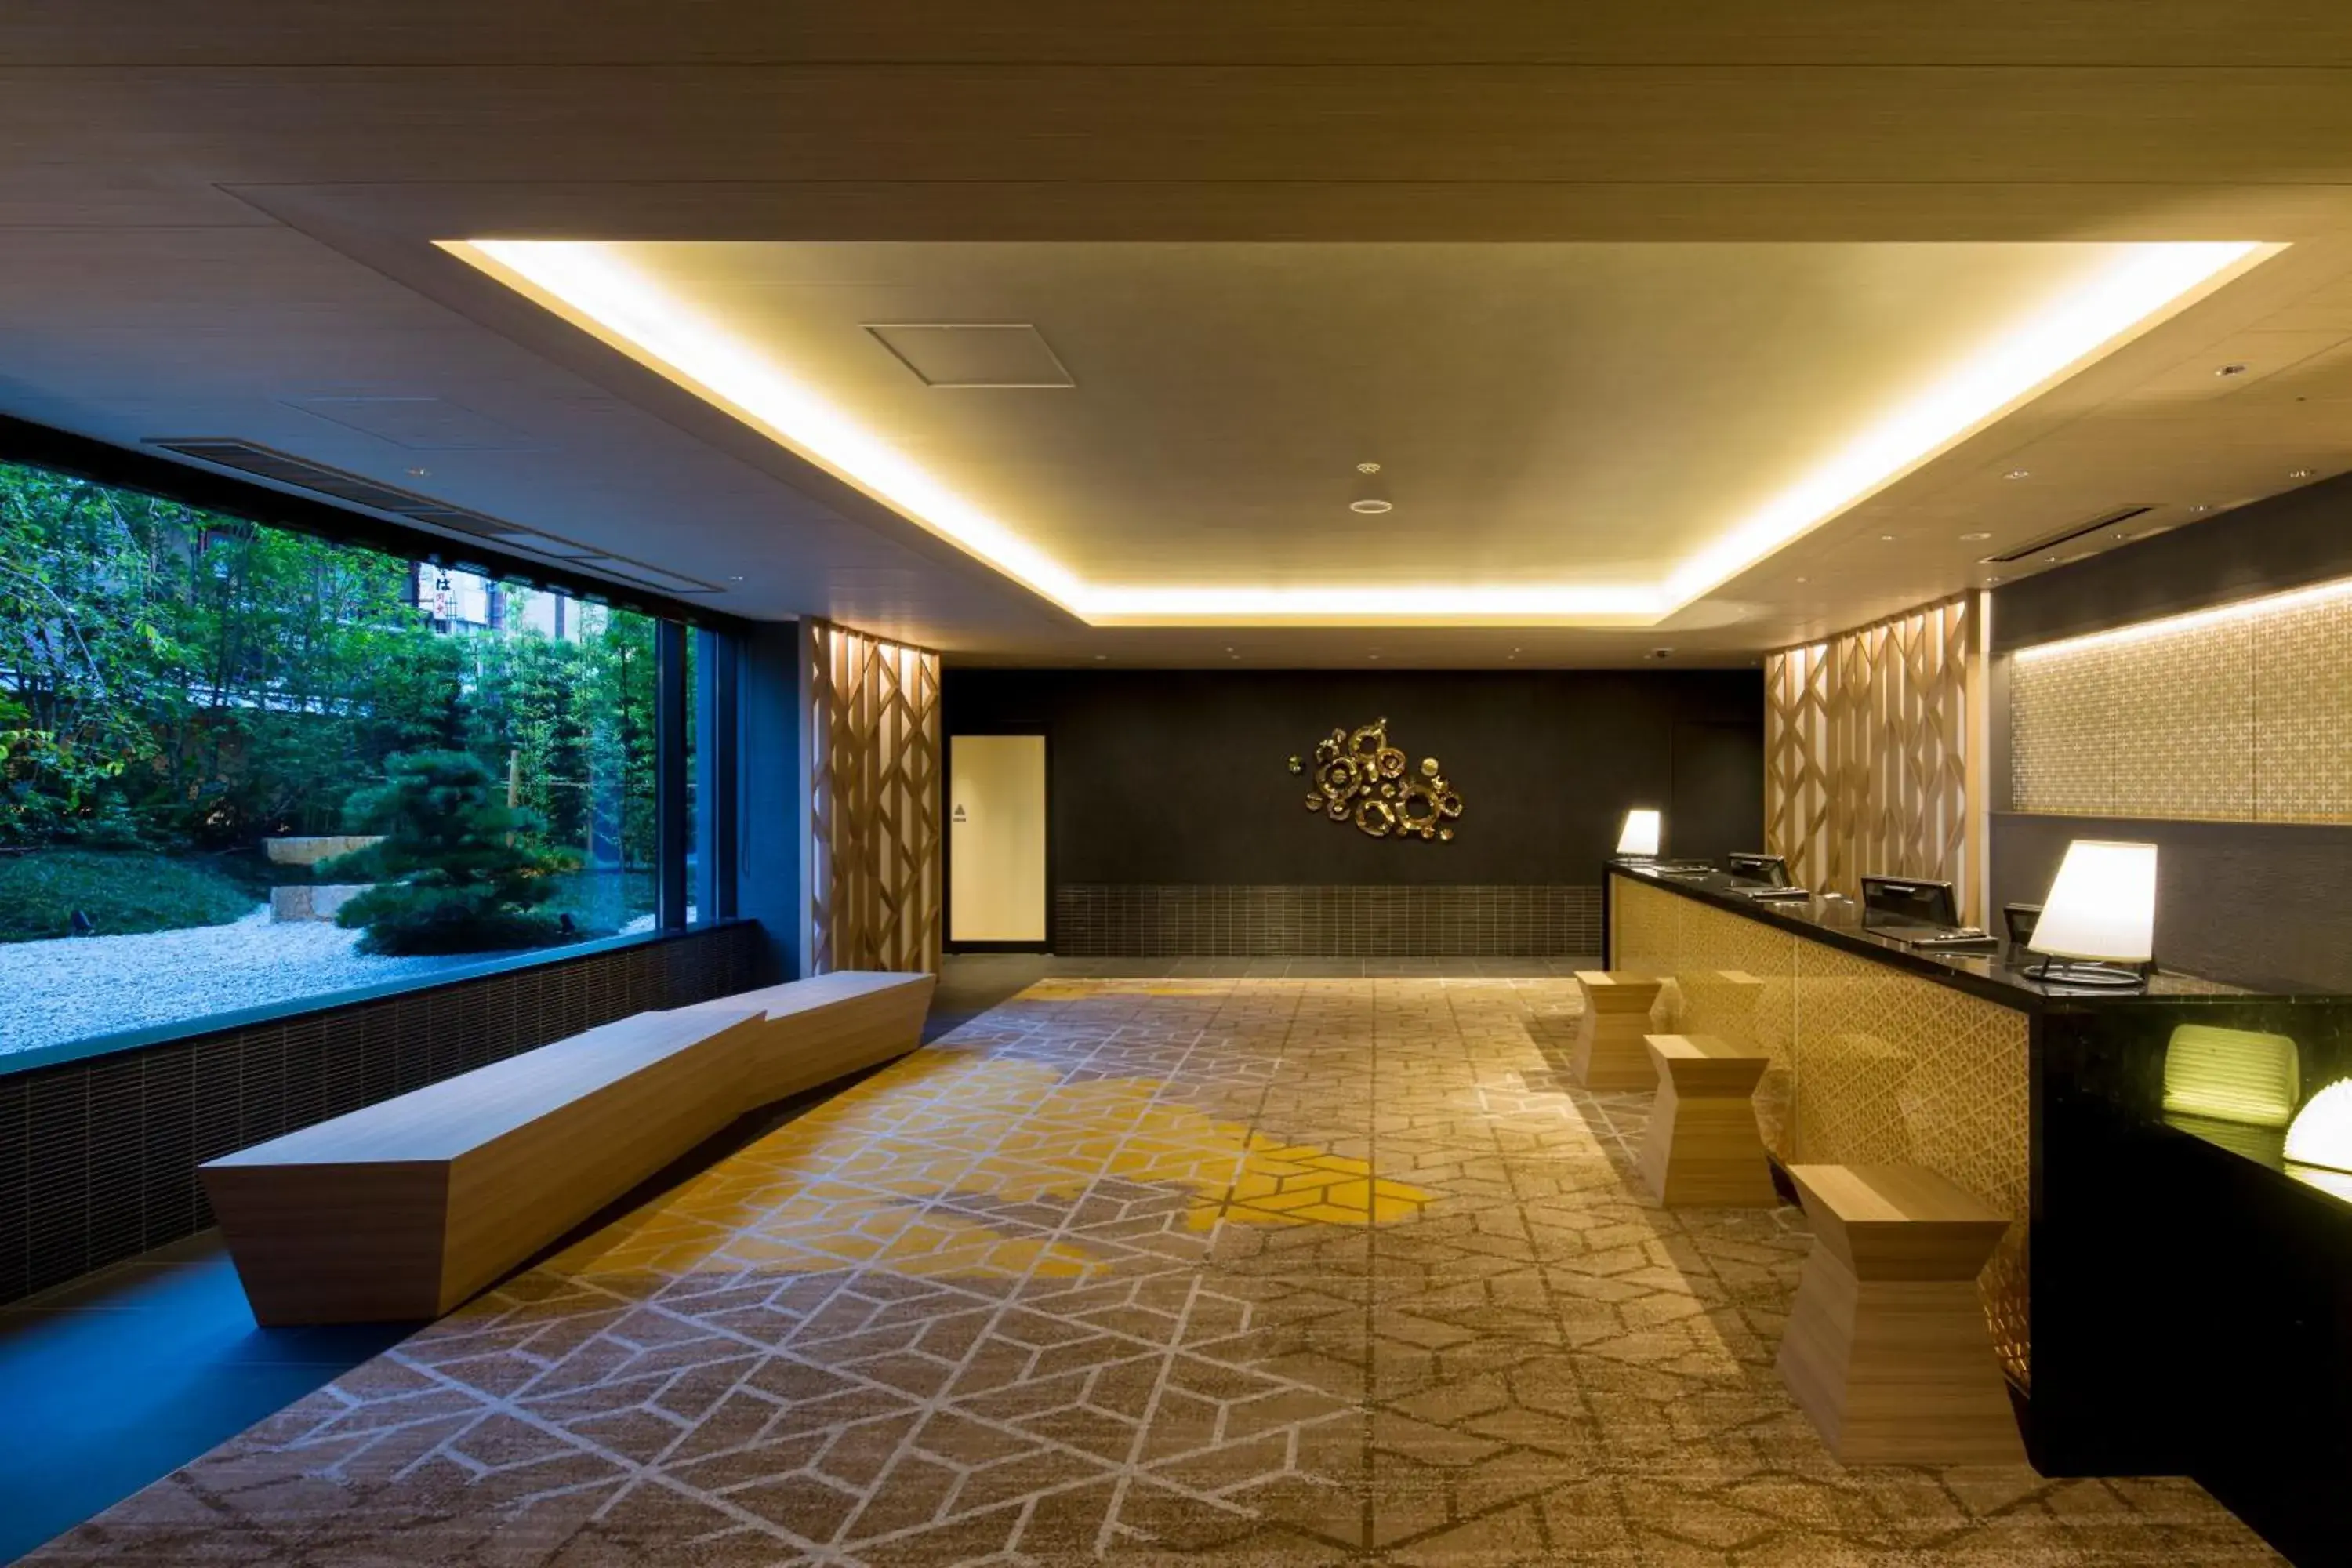 Lobby or reception in Shizutetsu Hotel Prezio Kyoto Shijo